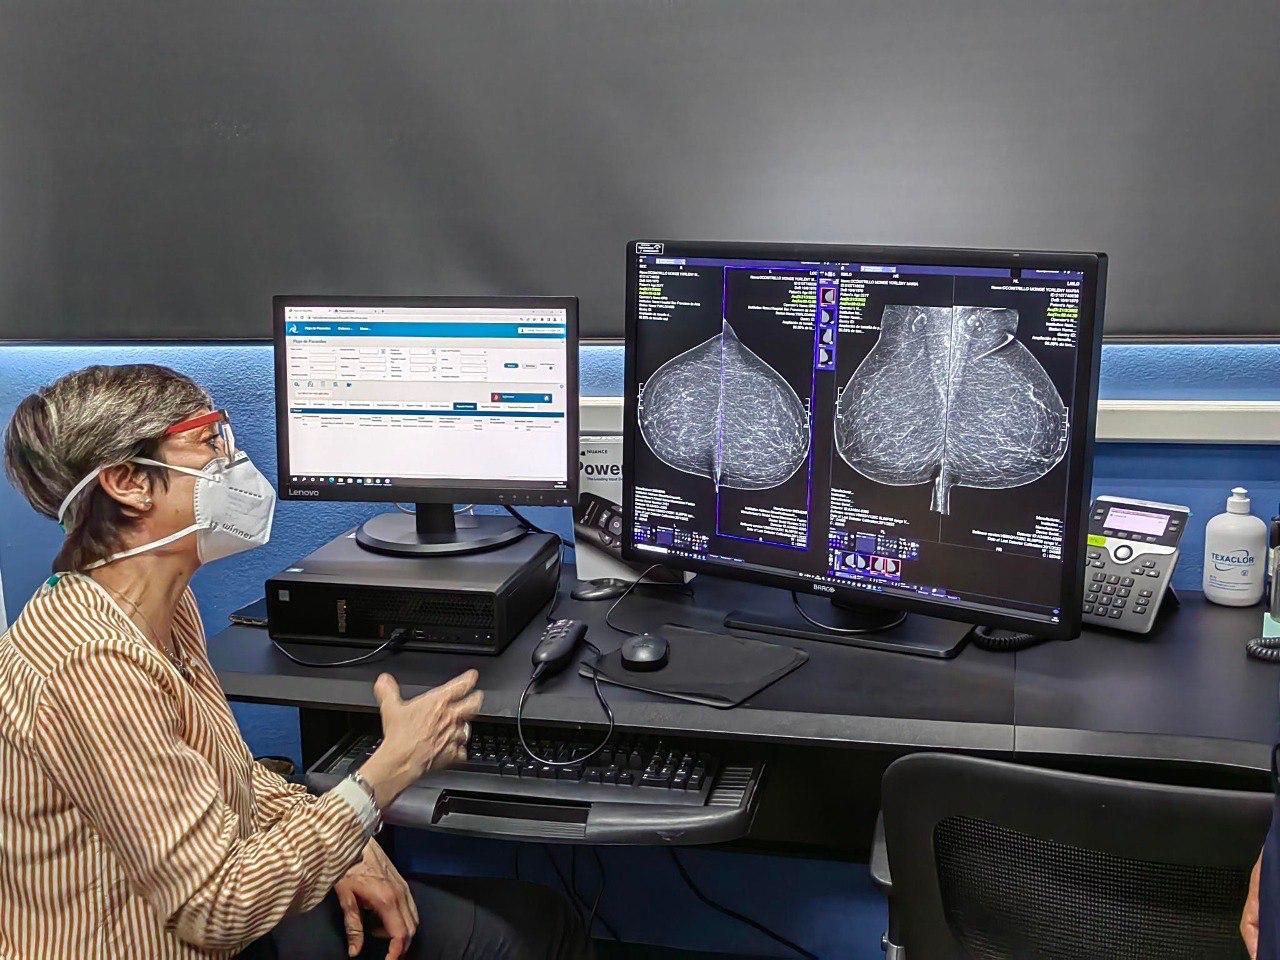 Caja inicia proyecto para digitalizar servicios de radiología y reducir listas de espera